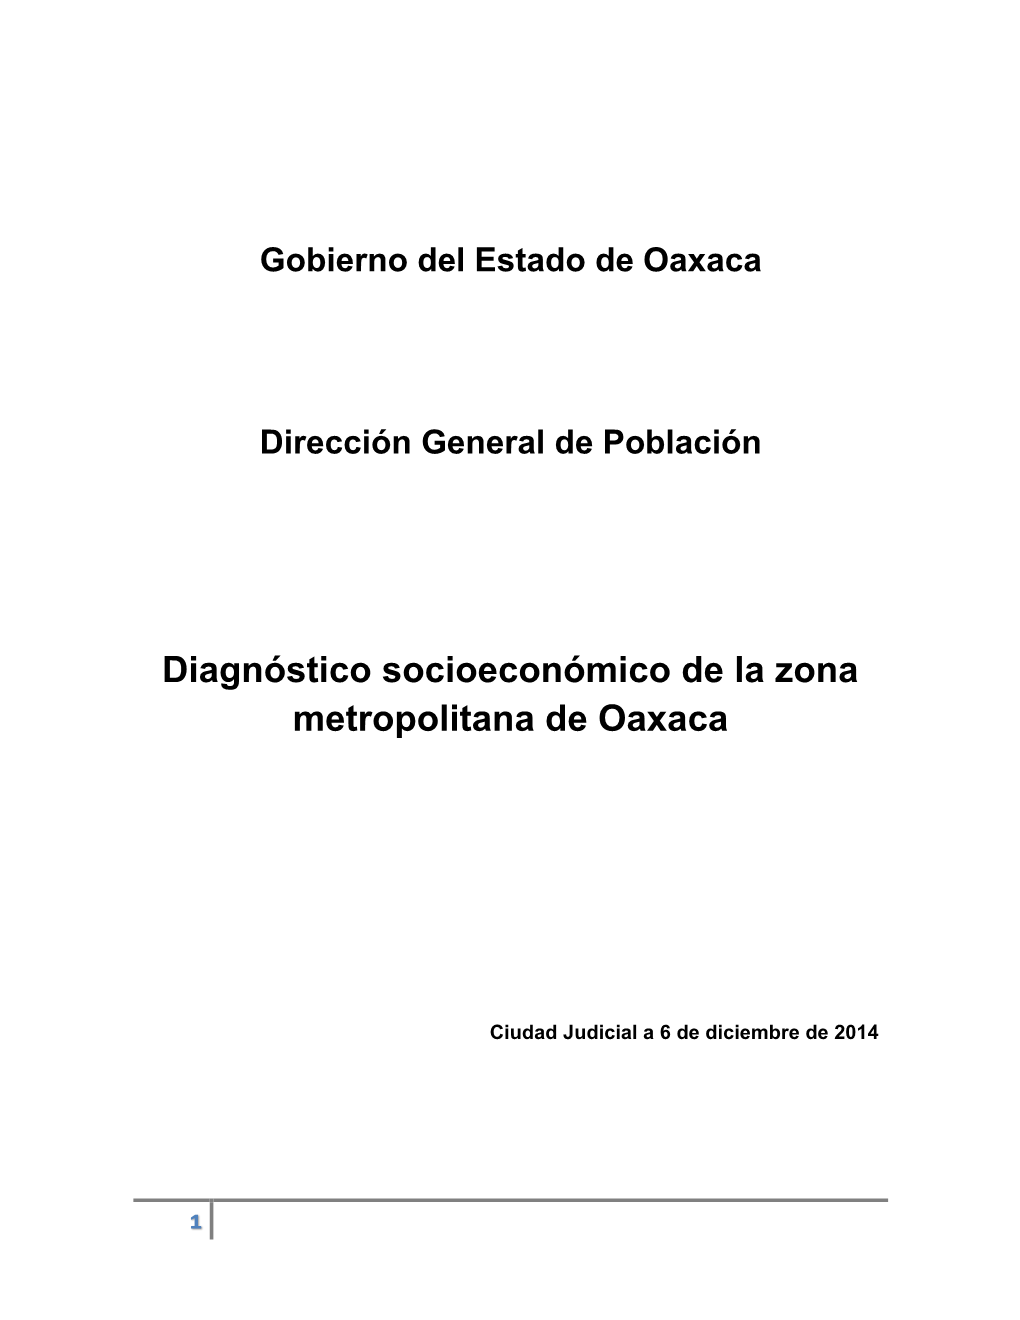 Diagnóstico Socioeconómico De La Zona Metropolitana De Oaxaca